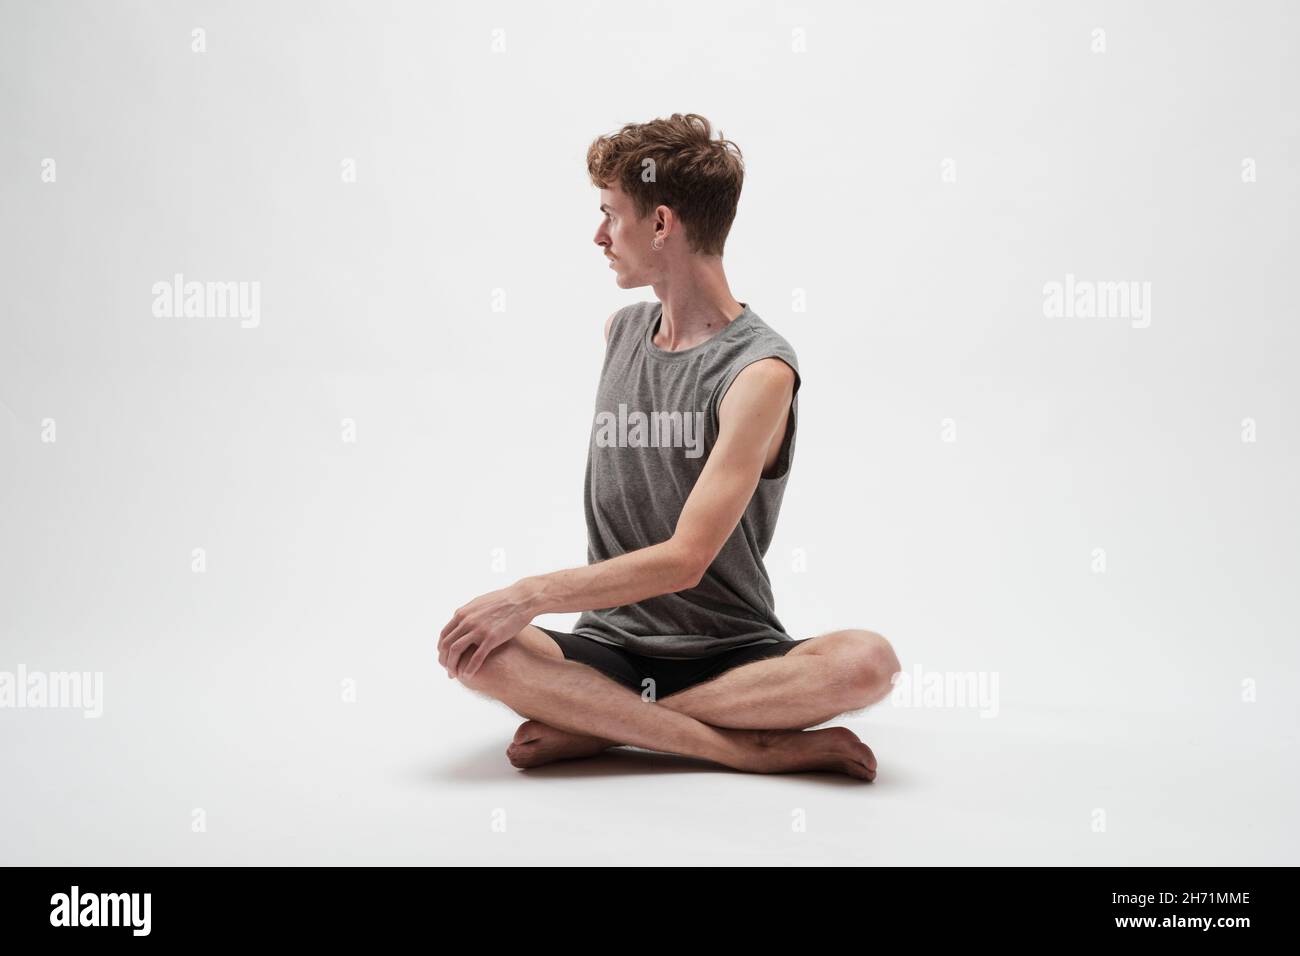 Jeune garçon méditant avec son corps tourné vers sa droite et les jambes croisées sur fond blanc Banque D'Images